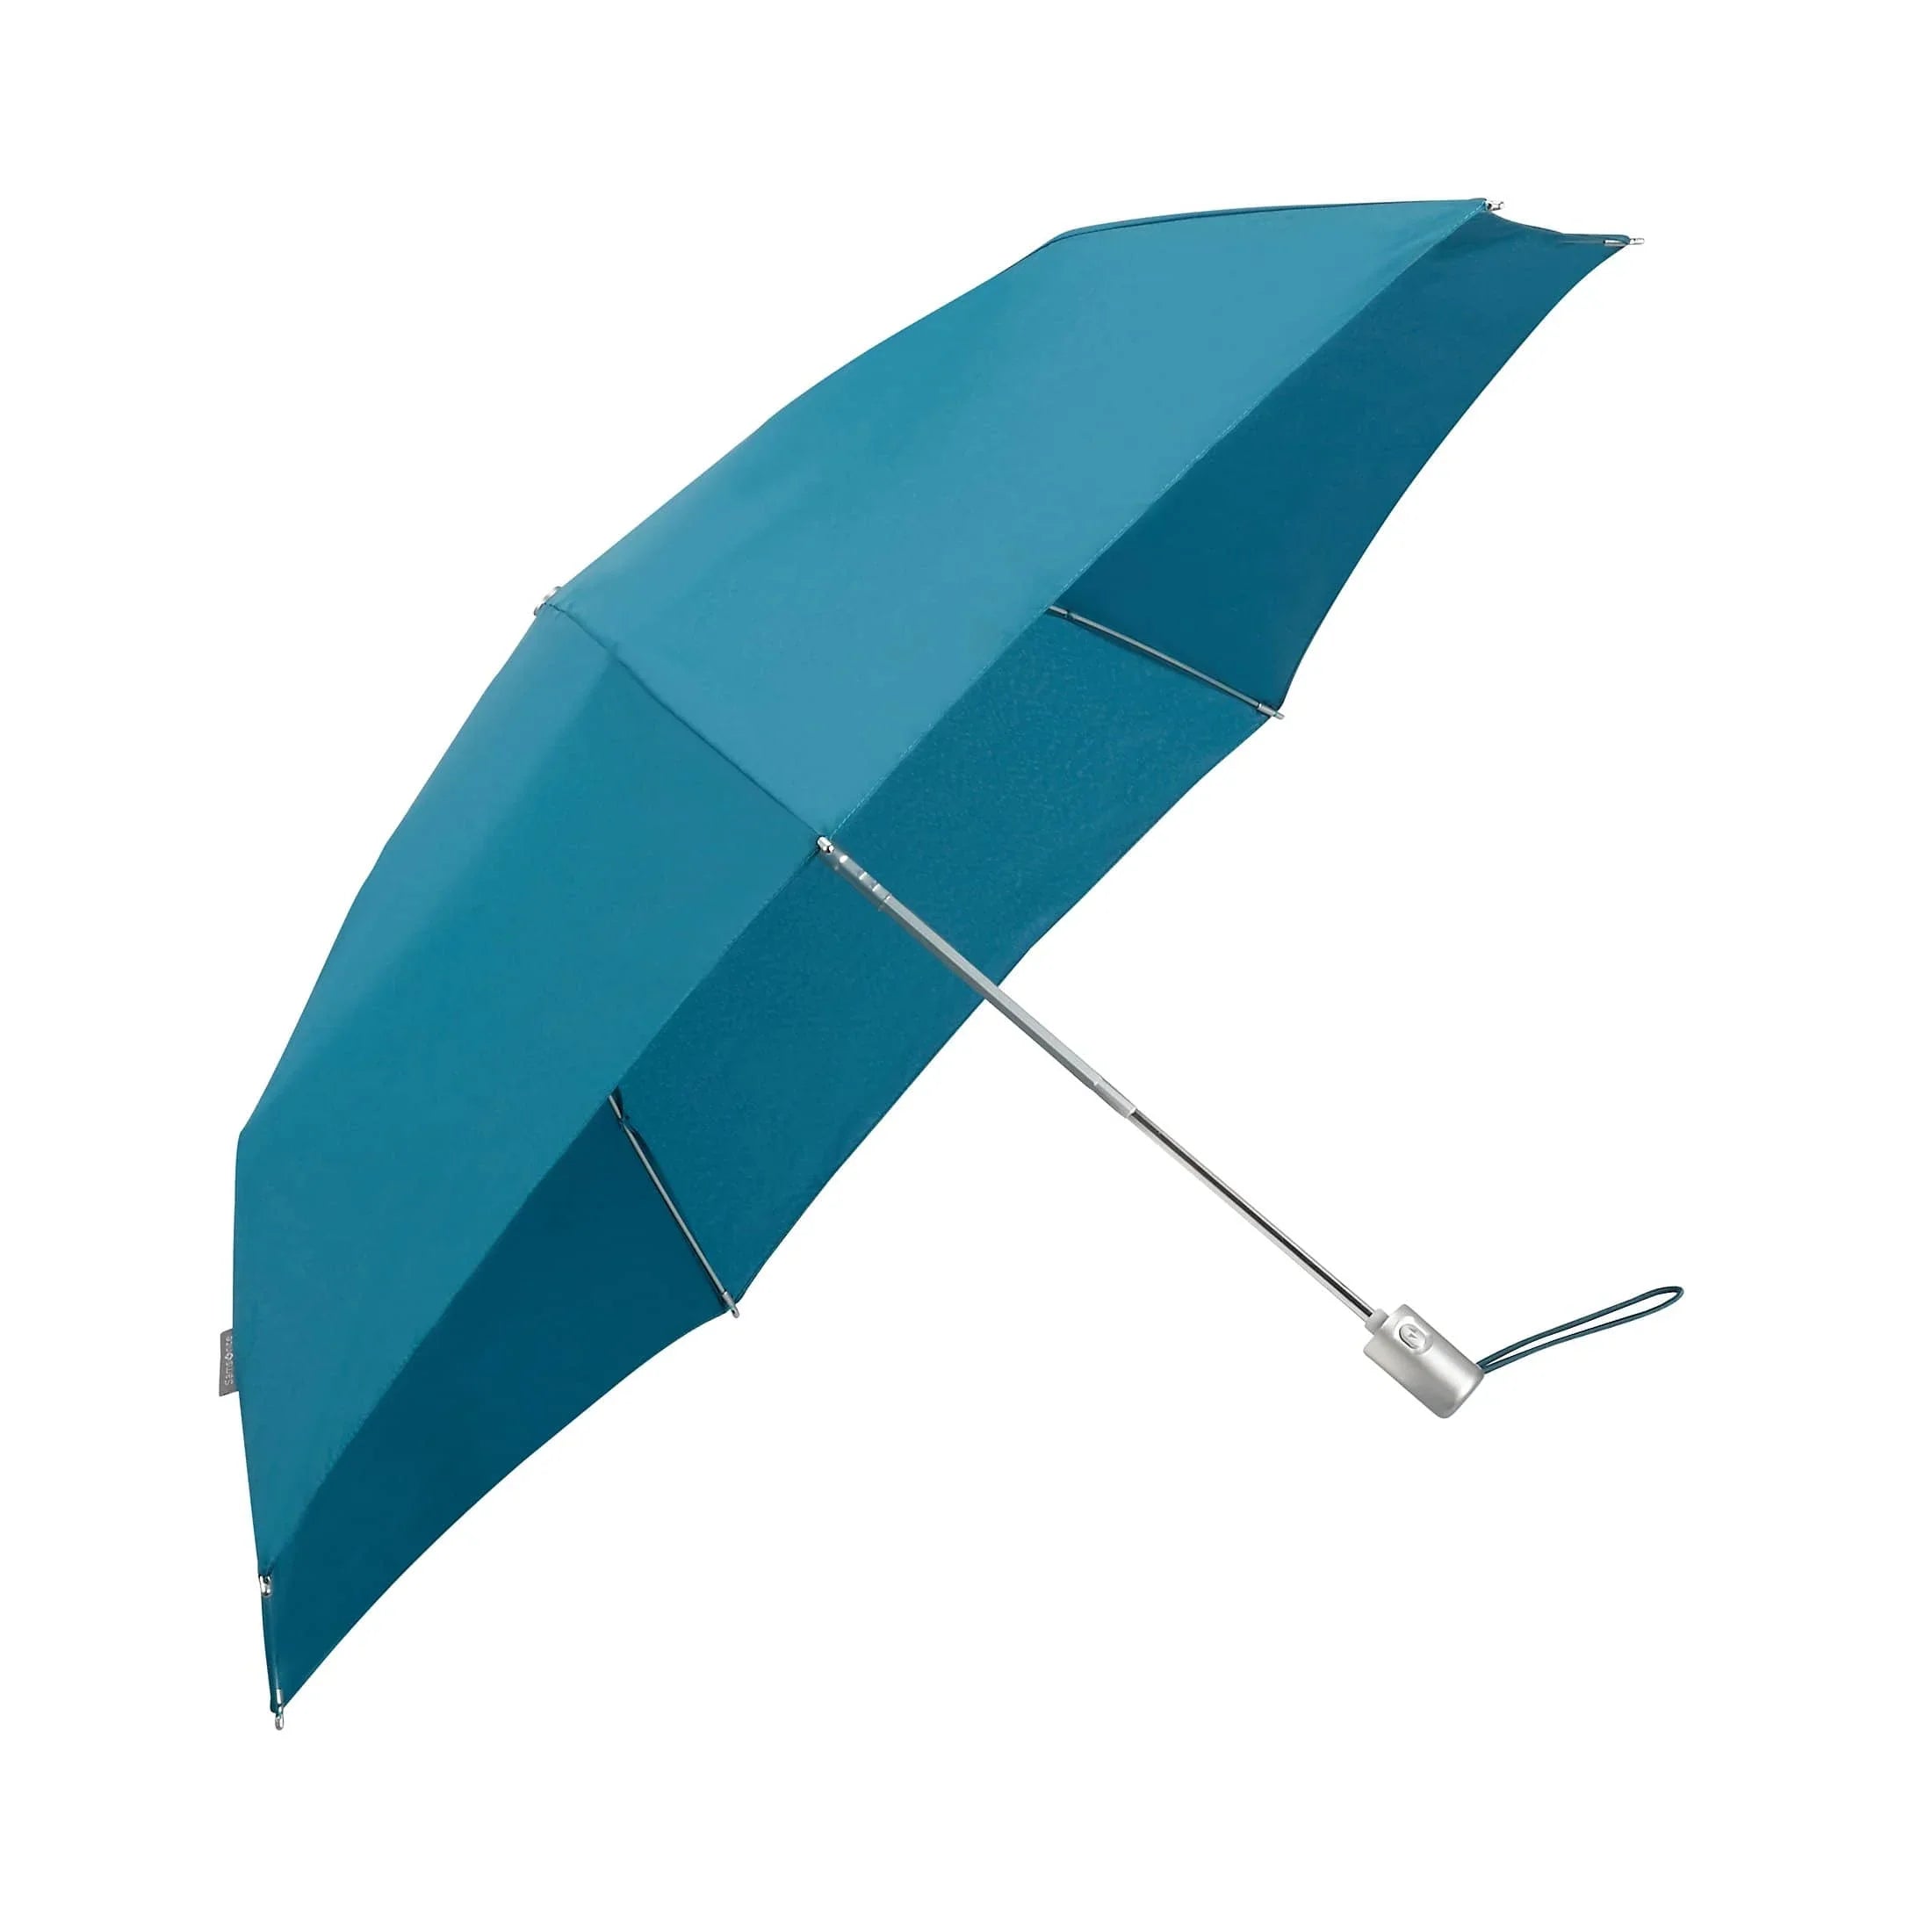 Samsonite Umbrella Alu Drop S Regenschirm 26 cm - indigo blue